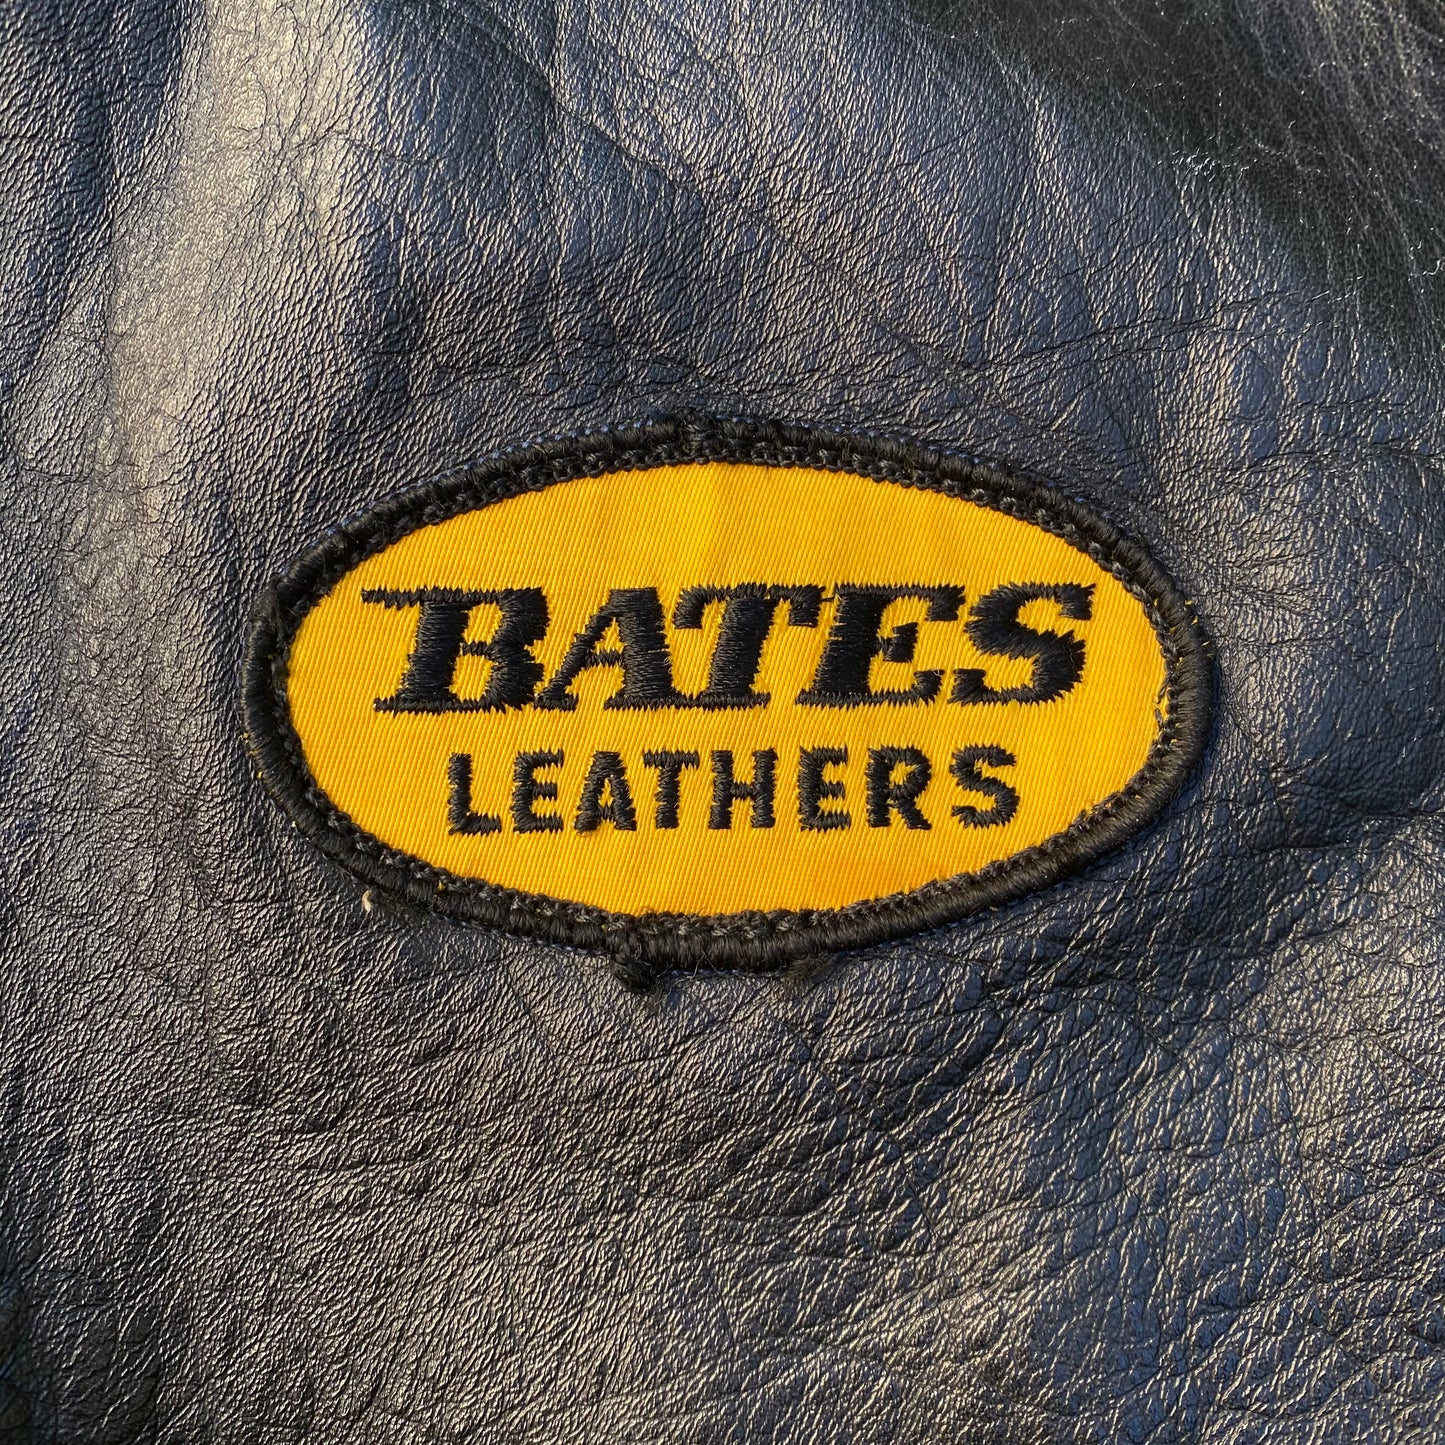 Bates 1960 Cafe Racing Leather Jacket